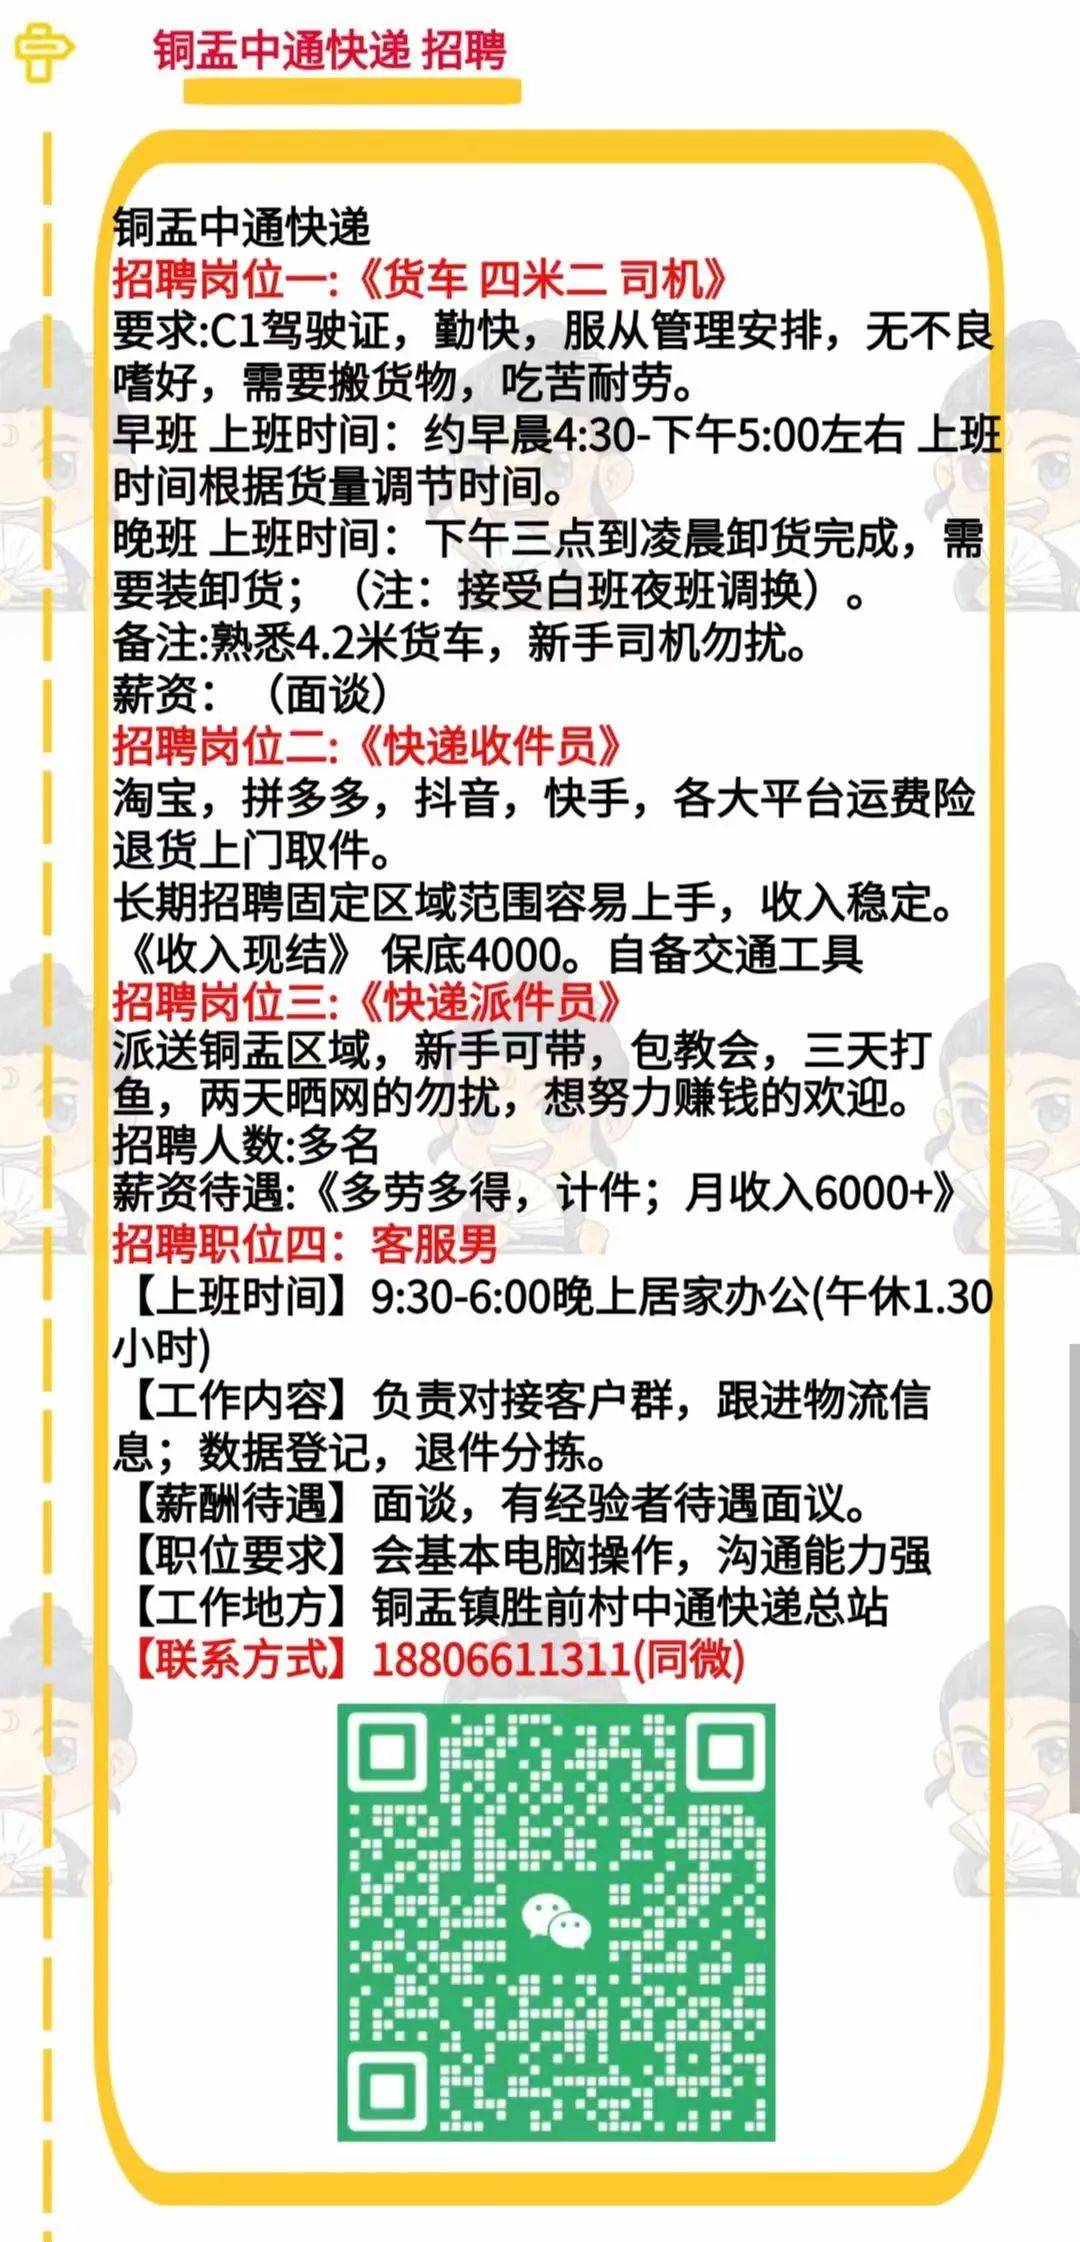 1 潮阳(新招电商仓库文员,补货员,文员,阿里运营助理,包食宿,月薪5500